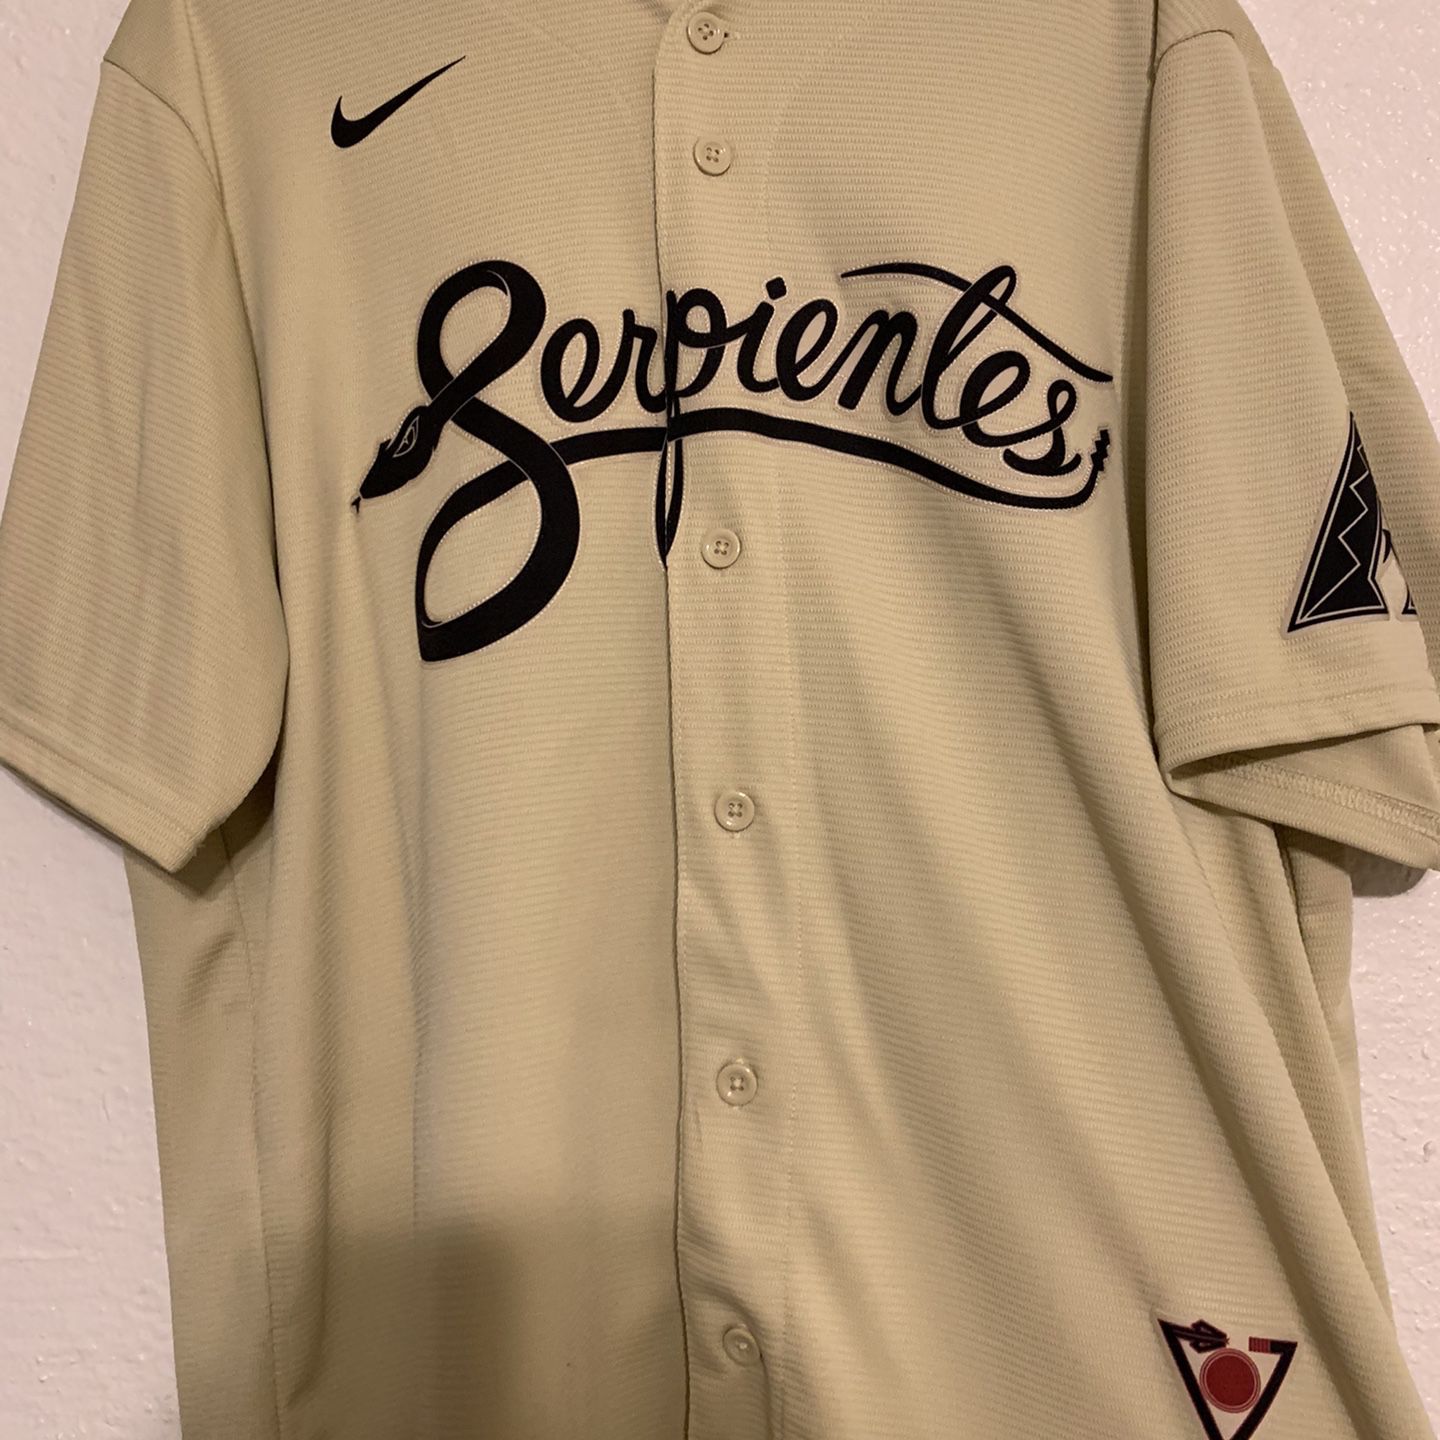 Diamondbacks Serpientes Jersey (XL) for Sale in Scottsdale, AZ - OfferUp